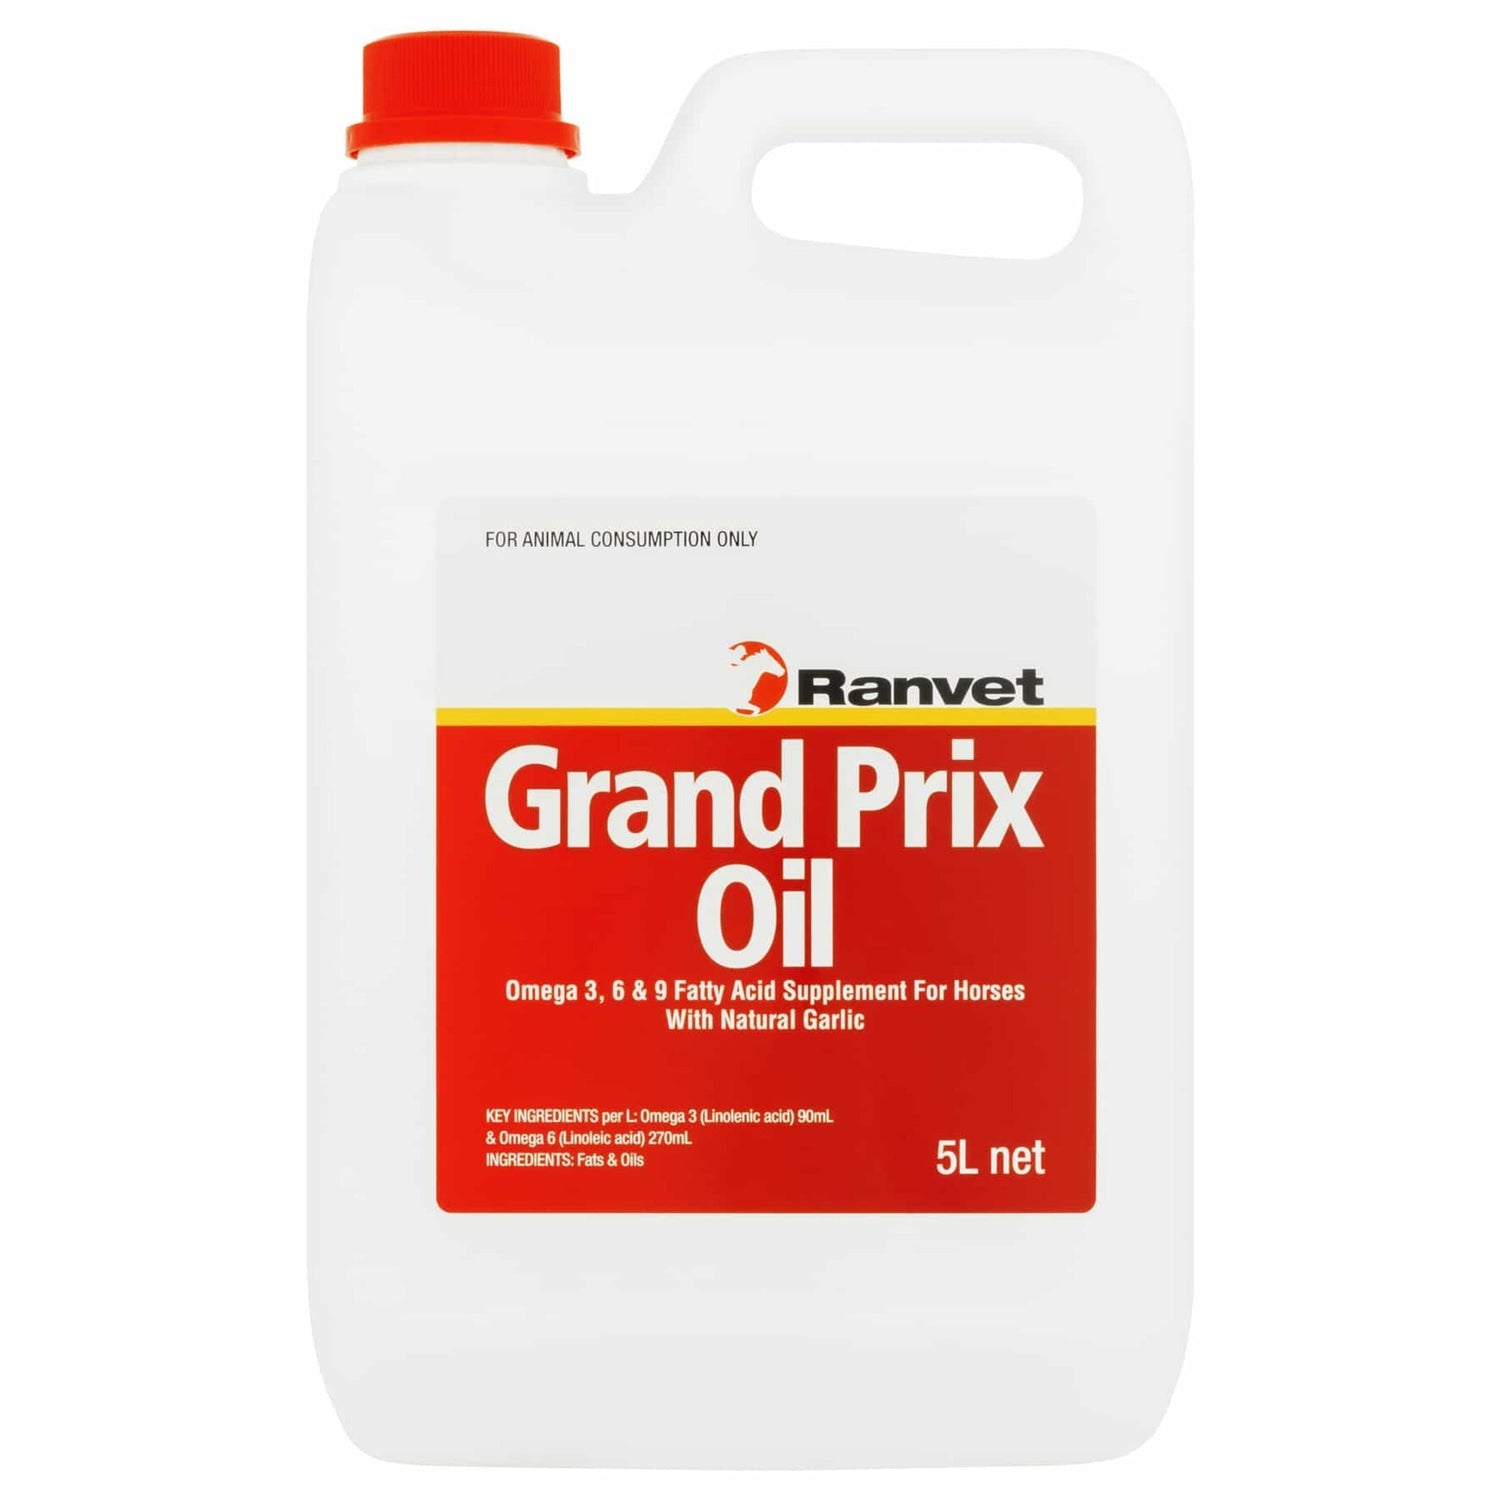 Ranvet Grand Prix Oil